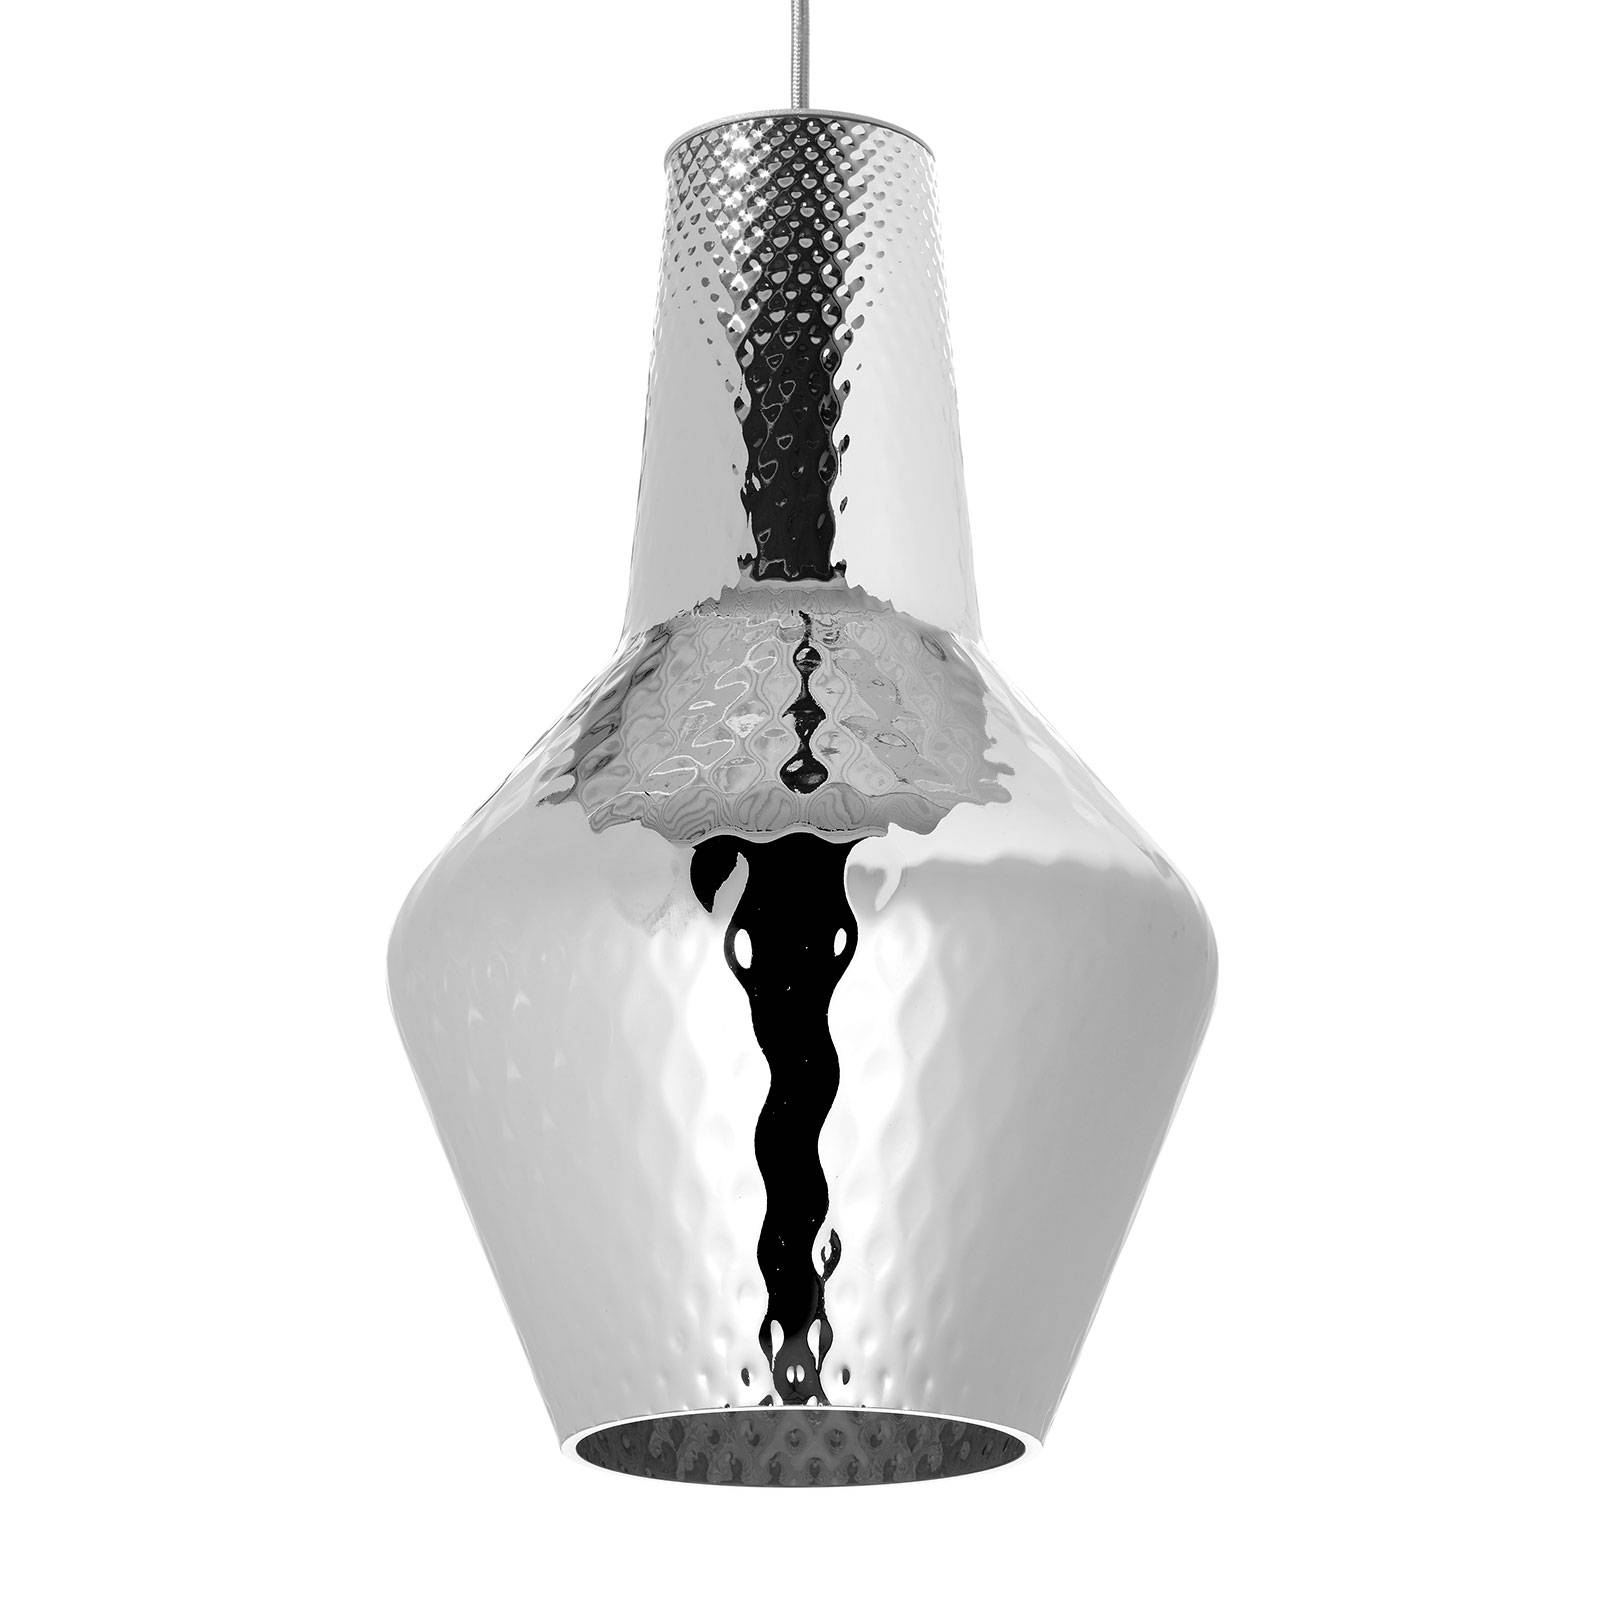 Hanglamp Romeo 130 cm zilver metallic